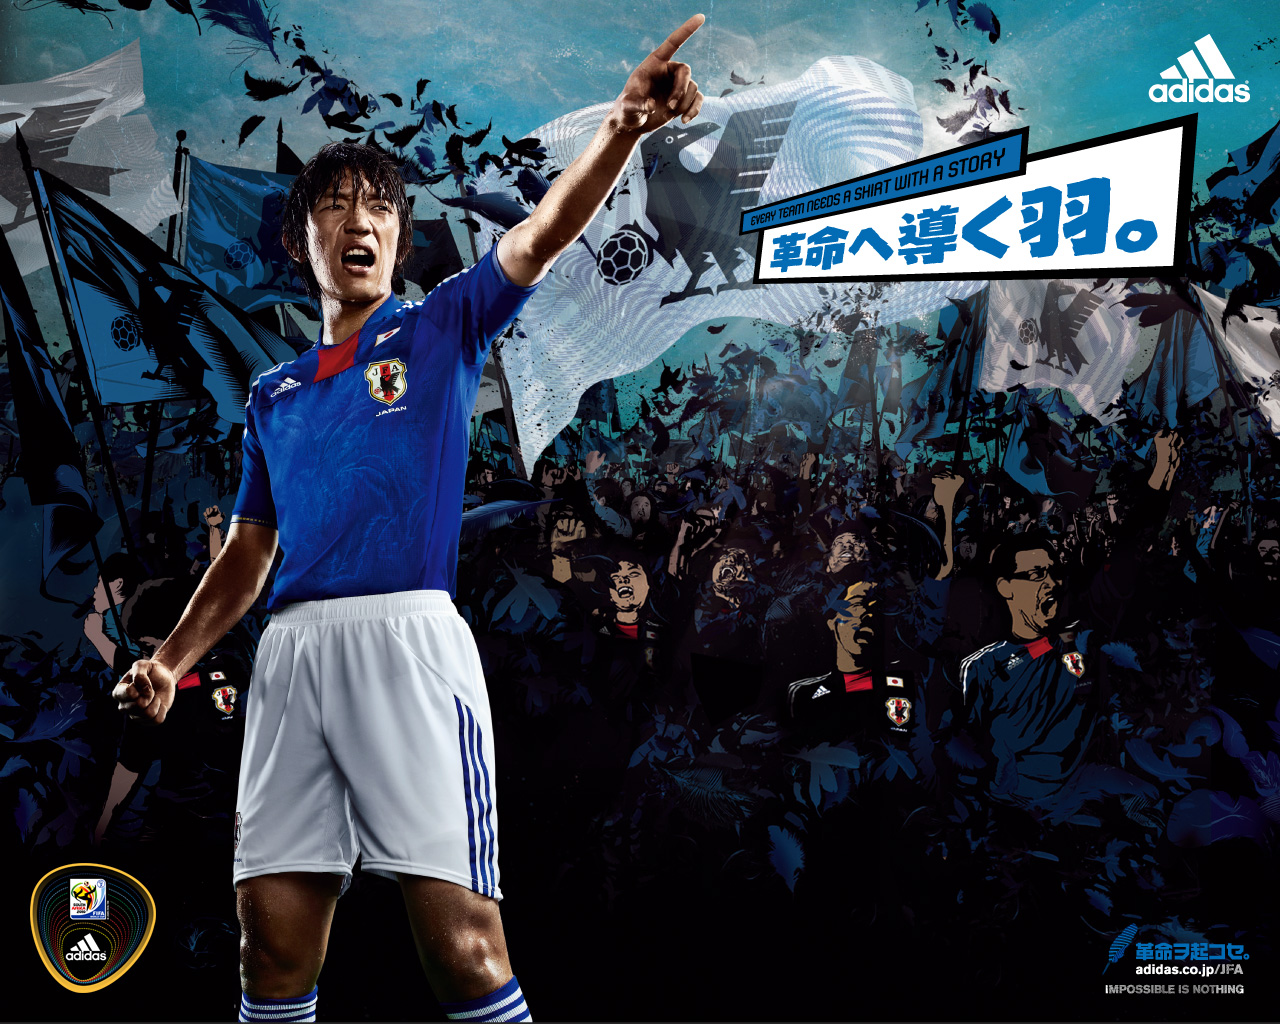 日本代表 10 11年adidas新ユニフォーム ホームモデル 遂に発表 Football Shirts Voltage Com サッカー 各国代表 クラブユニフォーム